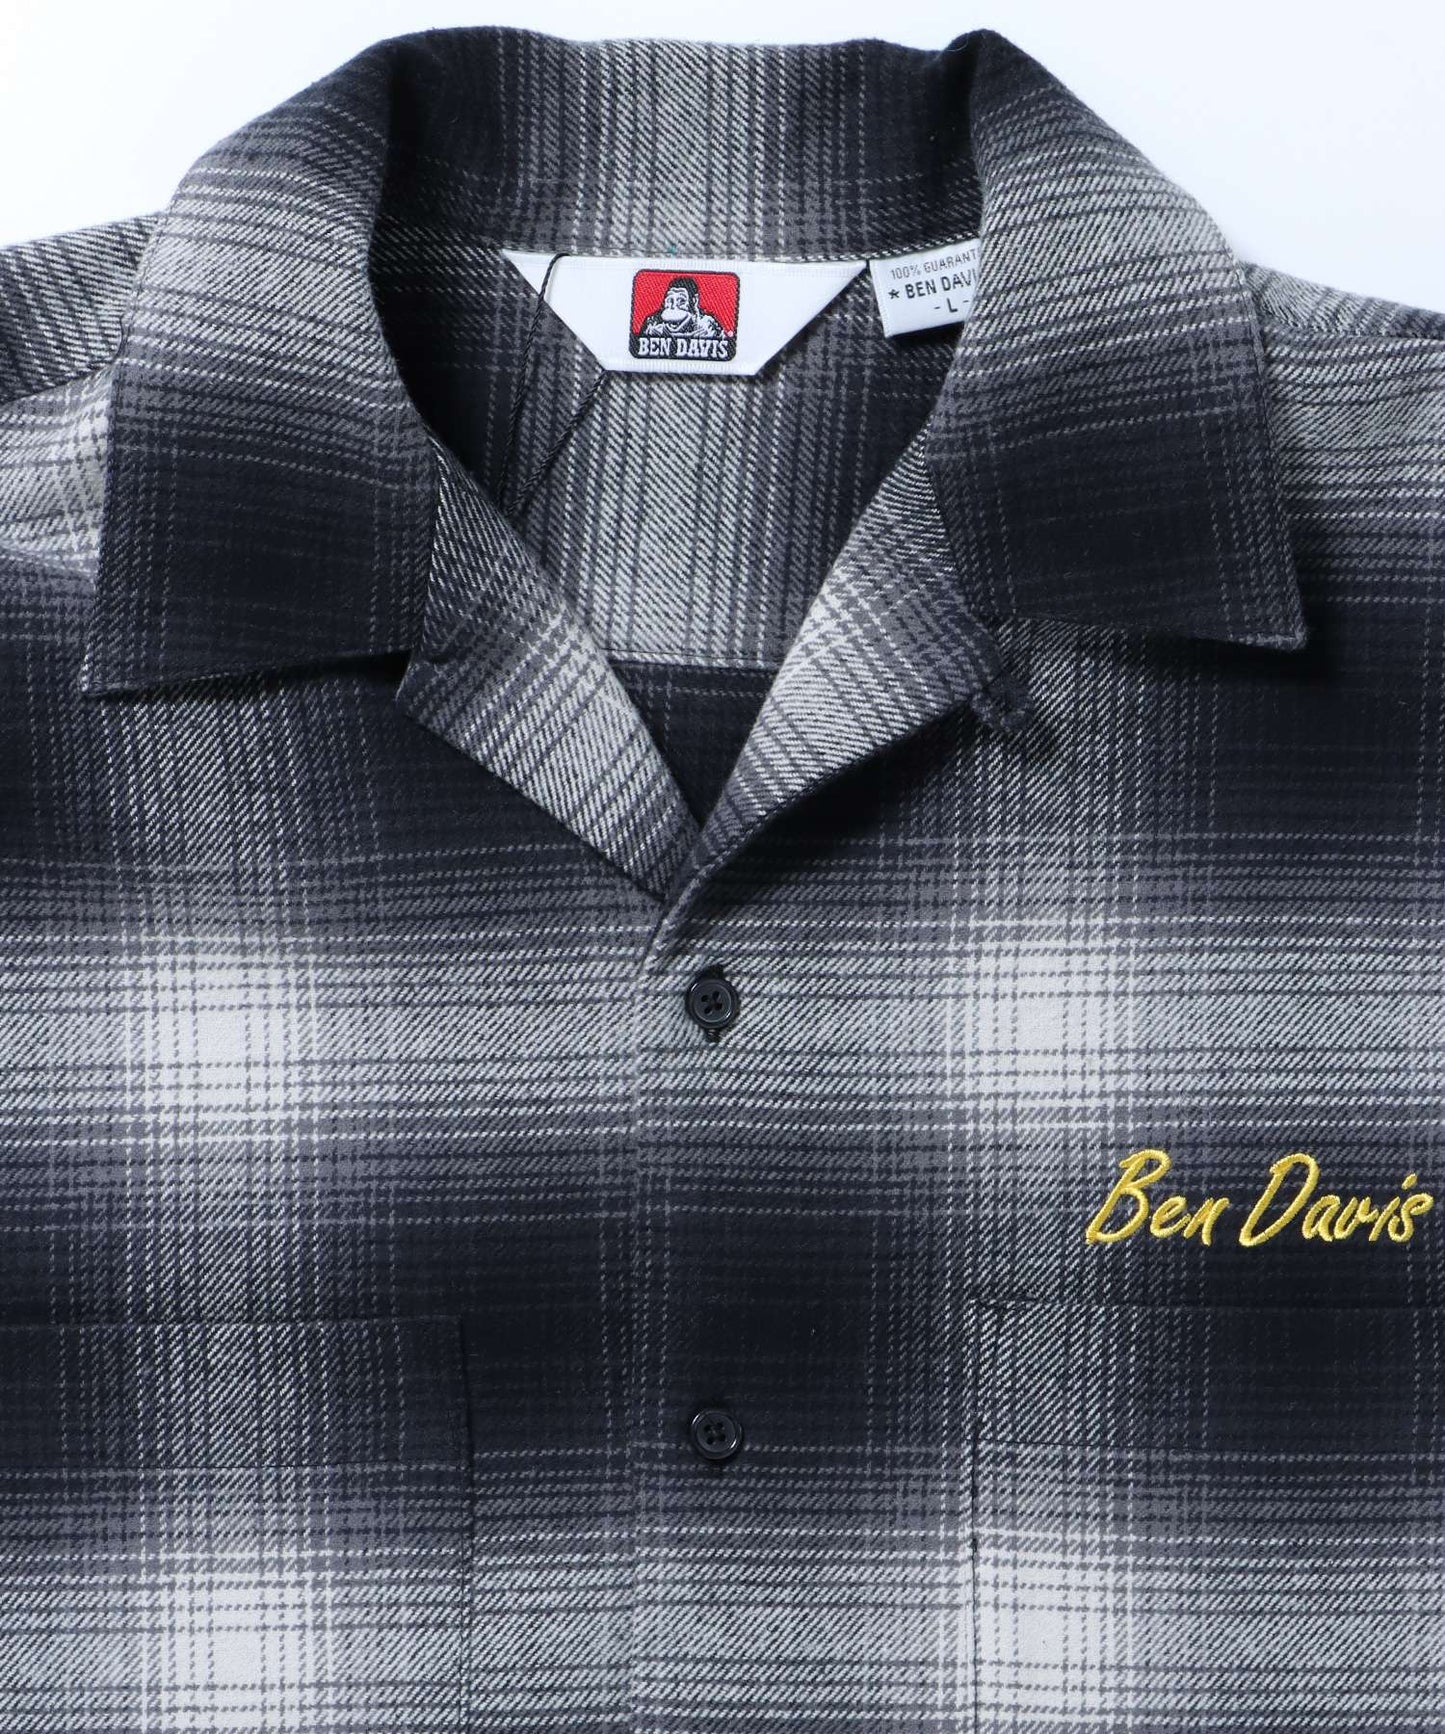 【BEN DAVIS(ベンデイビス)】 STICHED PLAID SHIRT / チェック 古着 刺繍 シャツ 長袖 ブラック